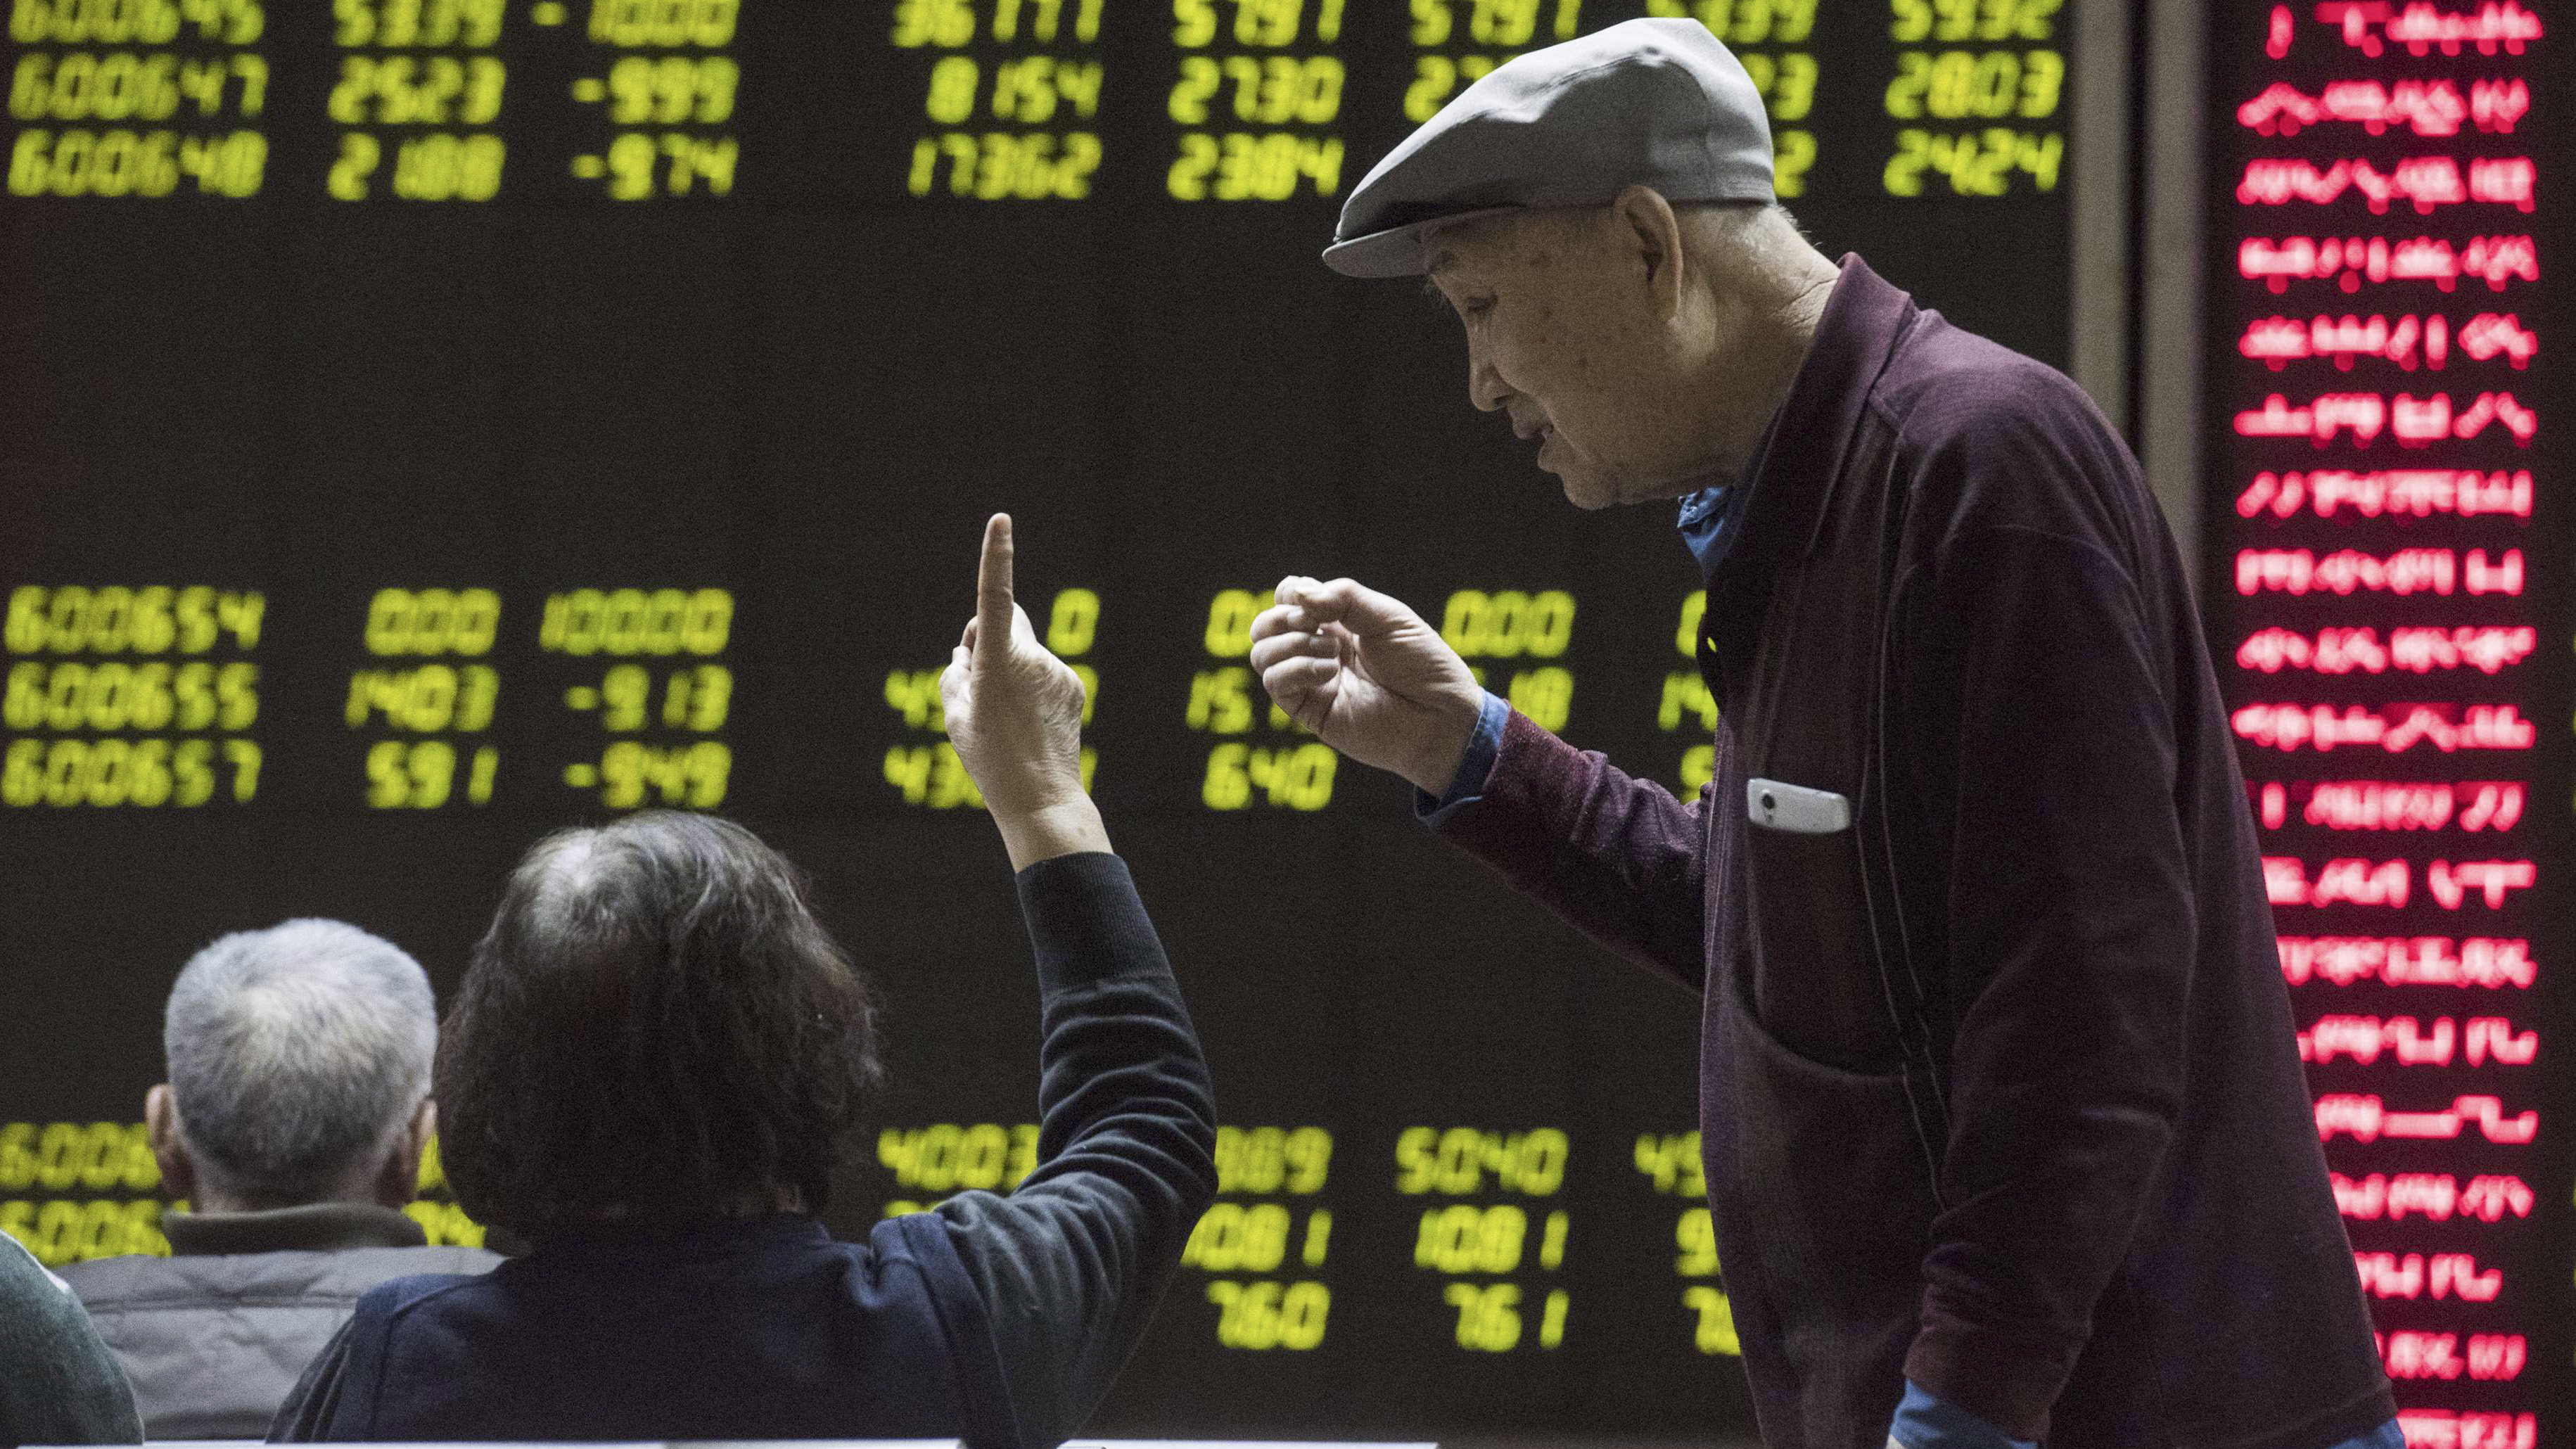 Chinesen verfolgen die Börsenkurse | null